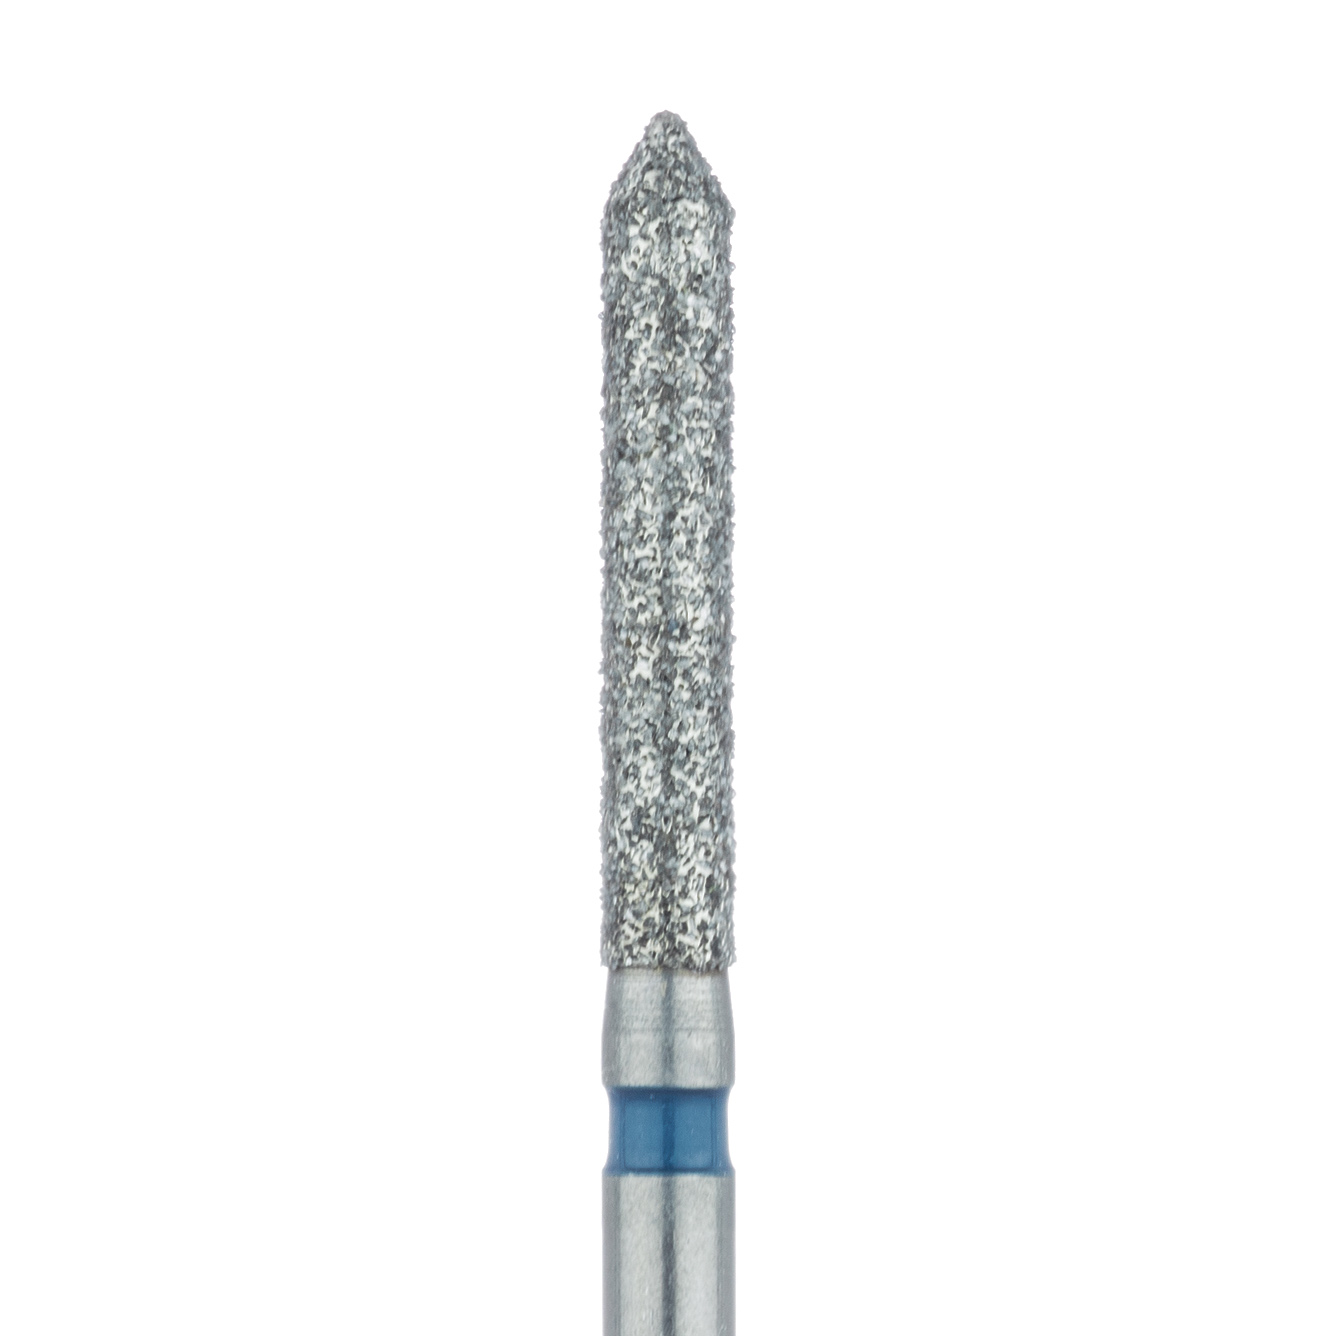 886-016-FG Long Pointed Tip Cylinder Diamond Bur, 1.6mm Ø, Medium, FG